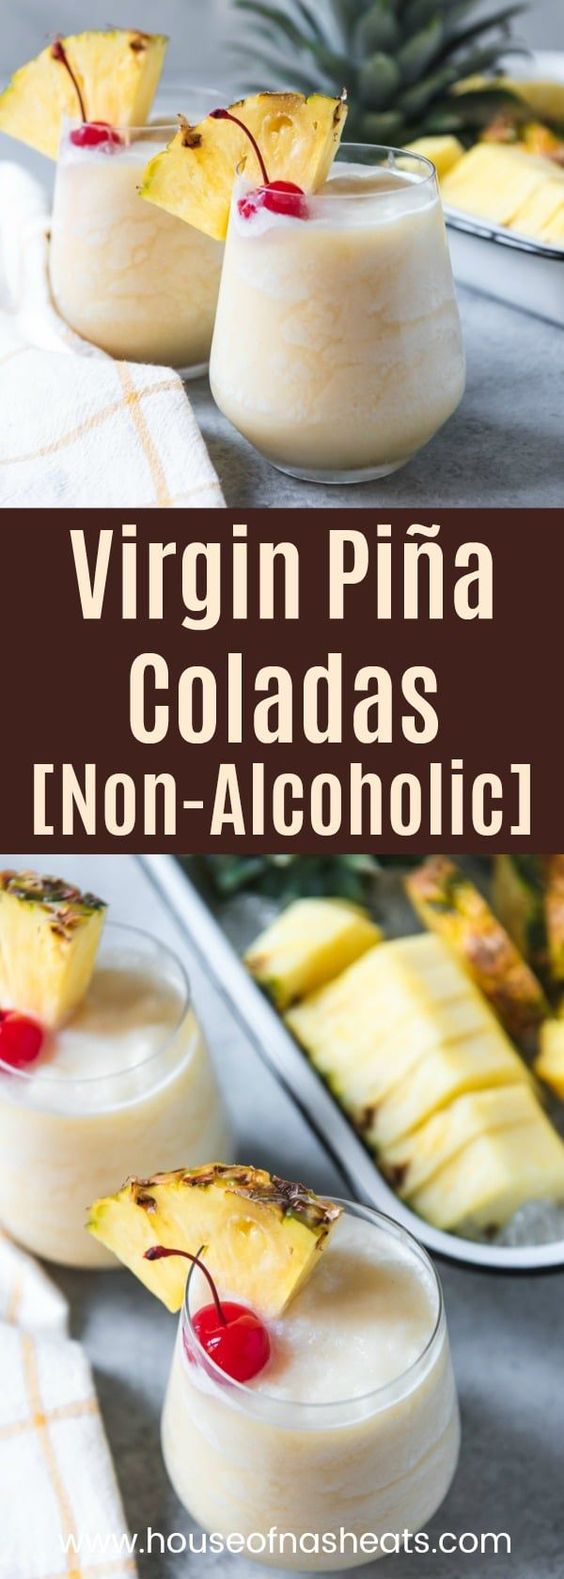 Virgin Piña Coladas (Non-Alcoholic) - Ideas For Cooking